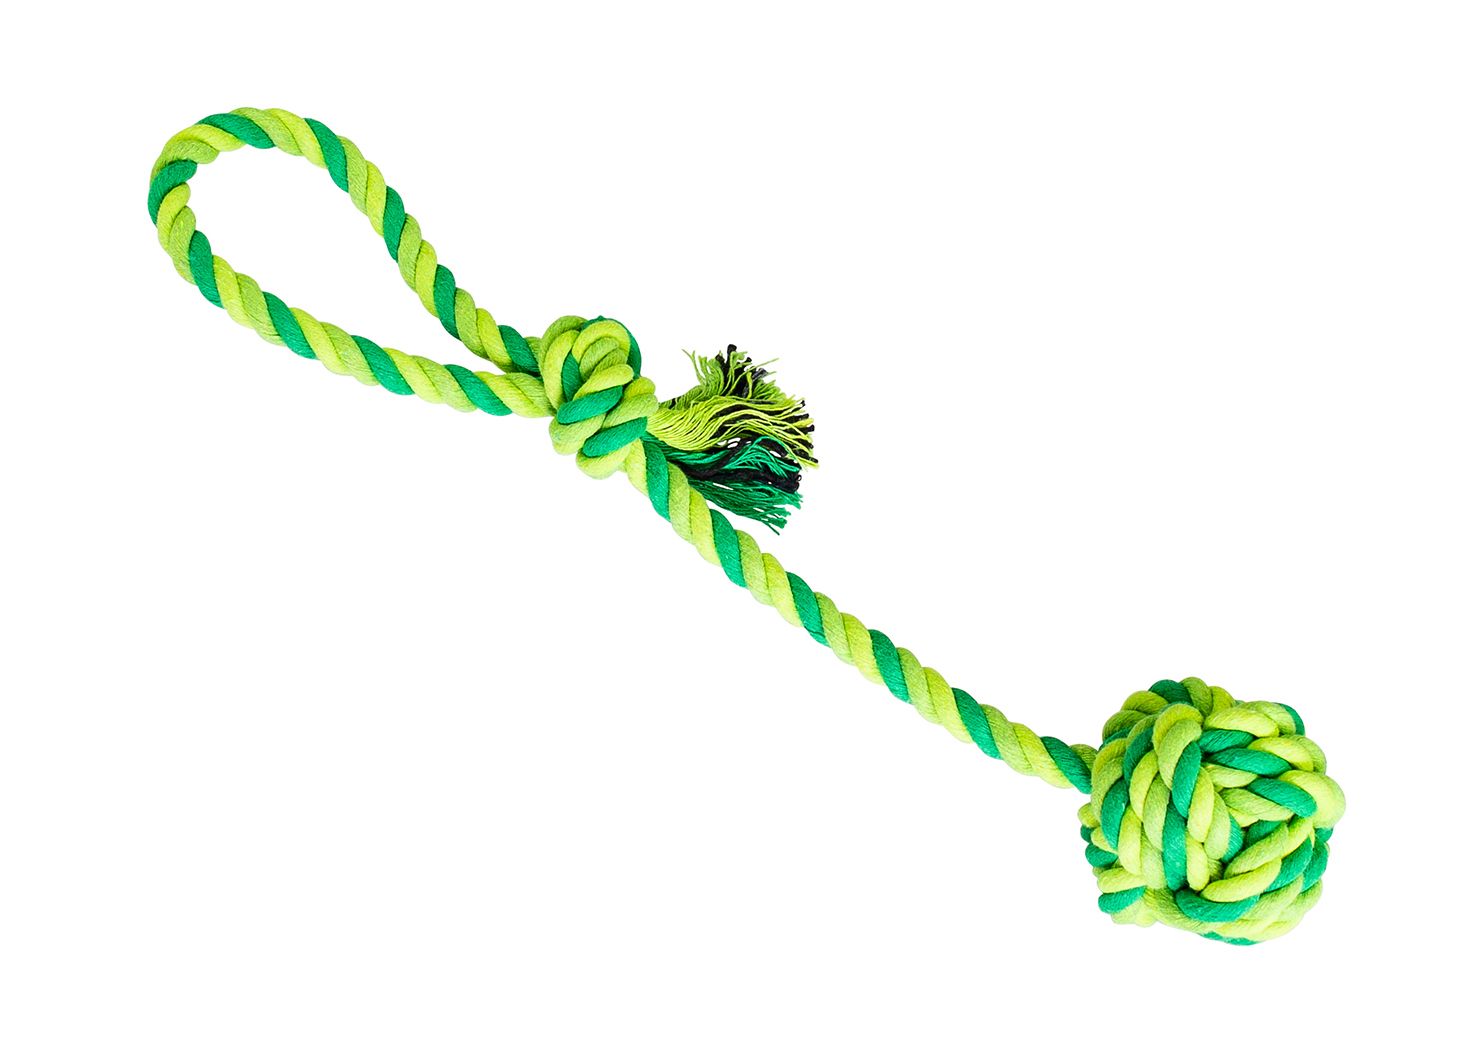 Přetahovadlo HipHop bavlněný míč 7 cm, 38 cm / 130 g sv.zelená, tm.zelená, khaki HipHop Dog